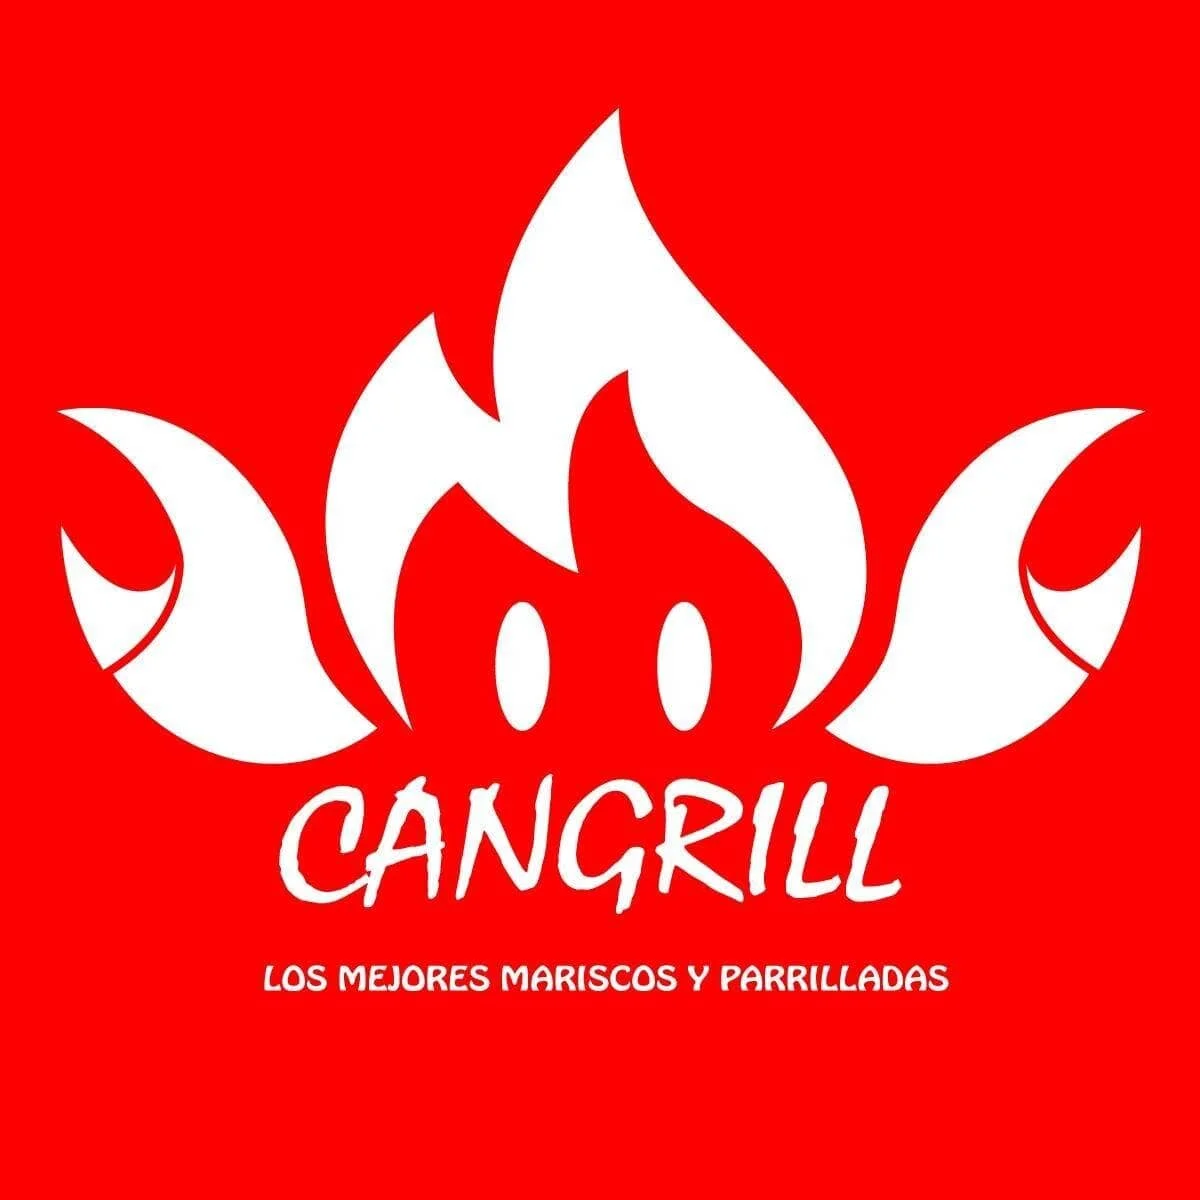 Restaurantes-cangrill-manta-cangrejo-19628